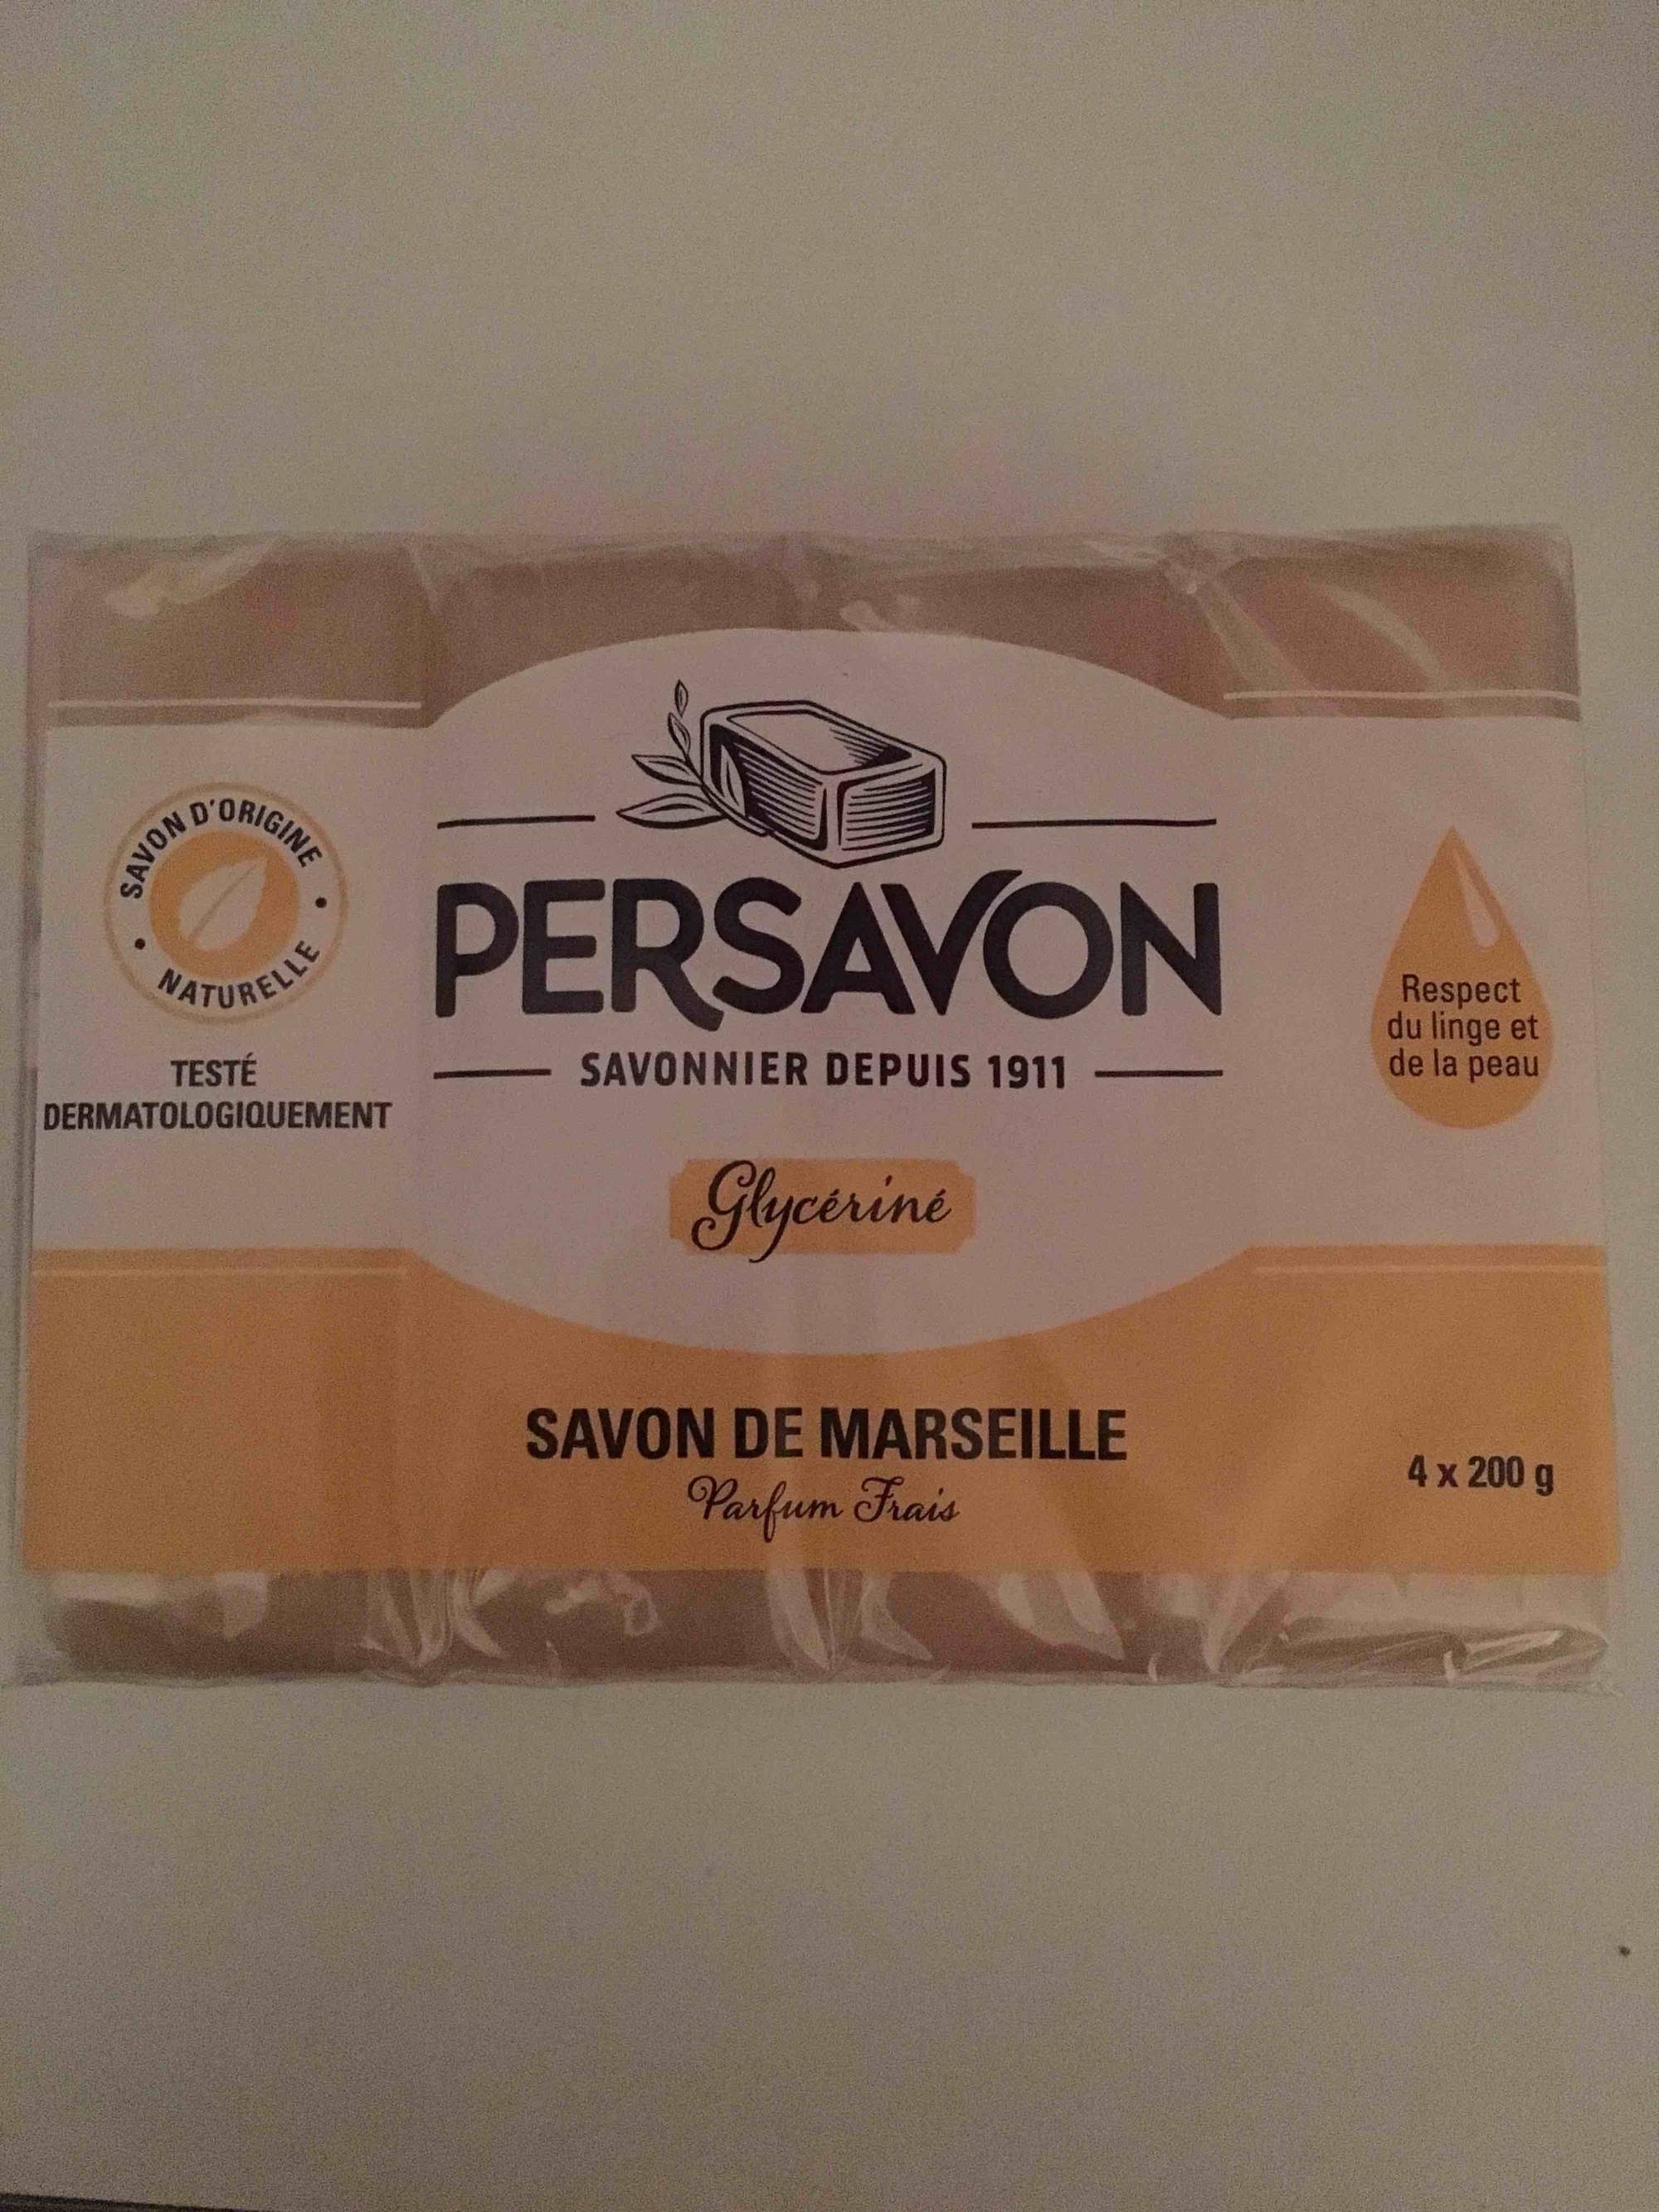 Composition PERSAVON Savon de Marseille glycériné parfum frais